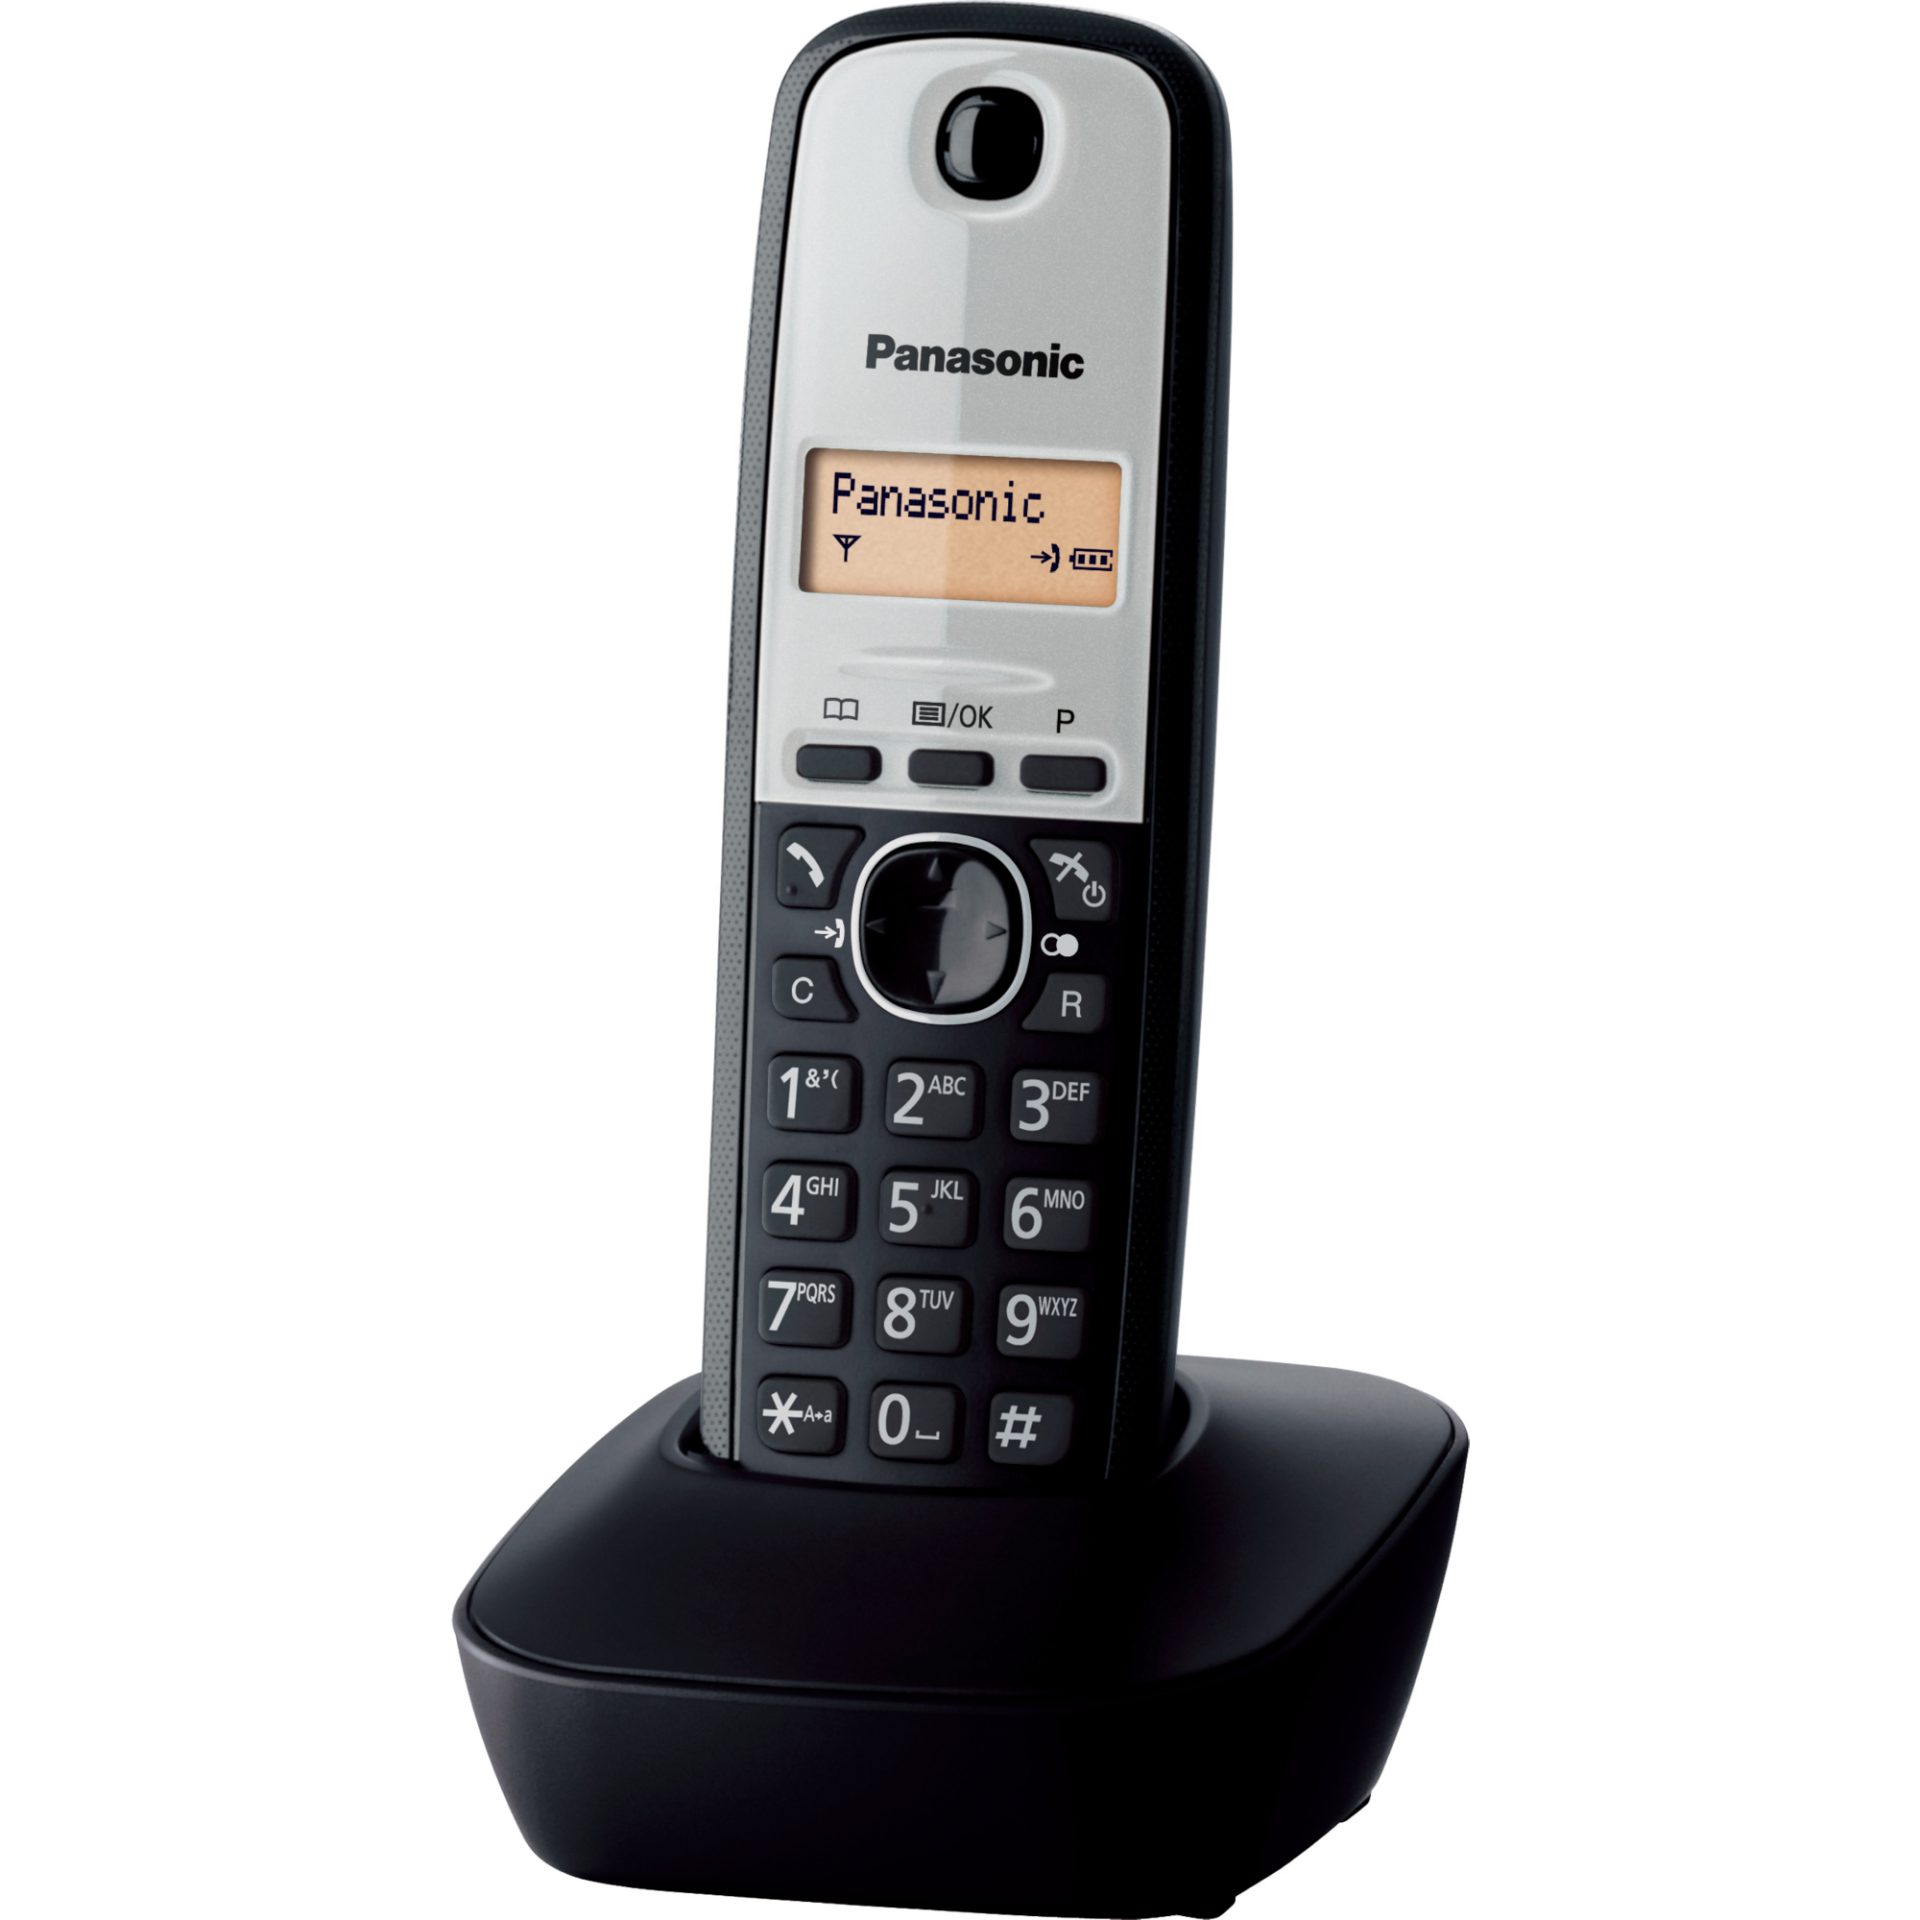 Panasonic KX-TG1911 DECT bezdrátový telefon (snadné použití, telefonní seznam 50 položek, podsvícený LCD displej, hodiny, budík), černá a šedá